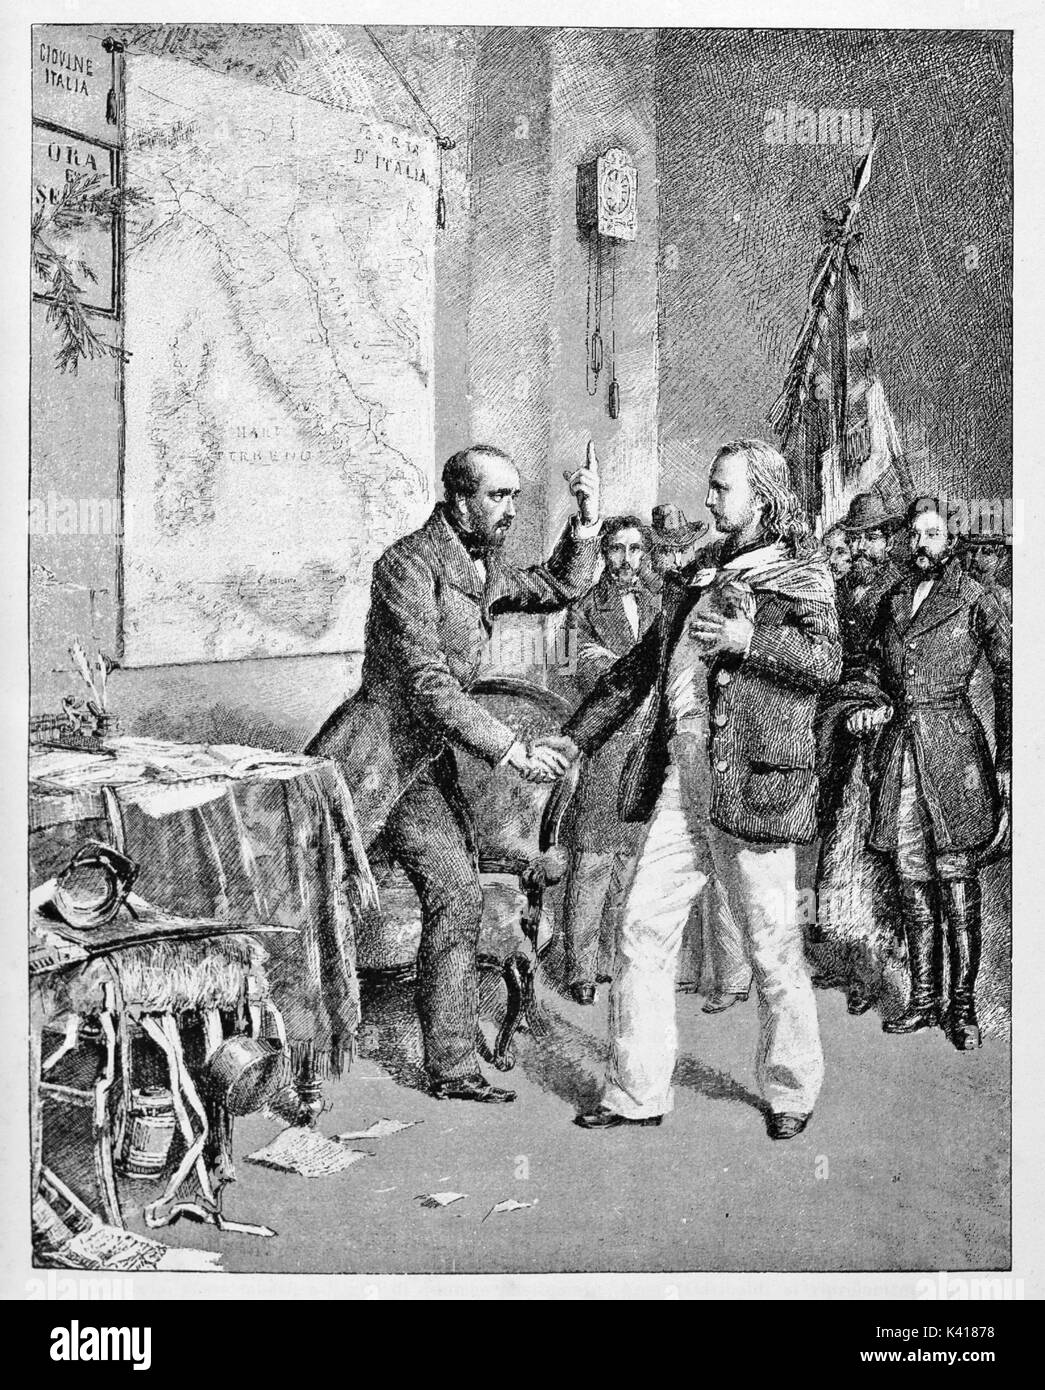 Les jeunes se réunit Garibaldi Mazzini dans une chambre avec la carte italienne sur un mur. Ils parlent ensemble et ils se serrent la main. Par E. Matania publié le Garibaldi e i suoi Tempi Milan Italie 1884 Banque D'Images